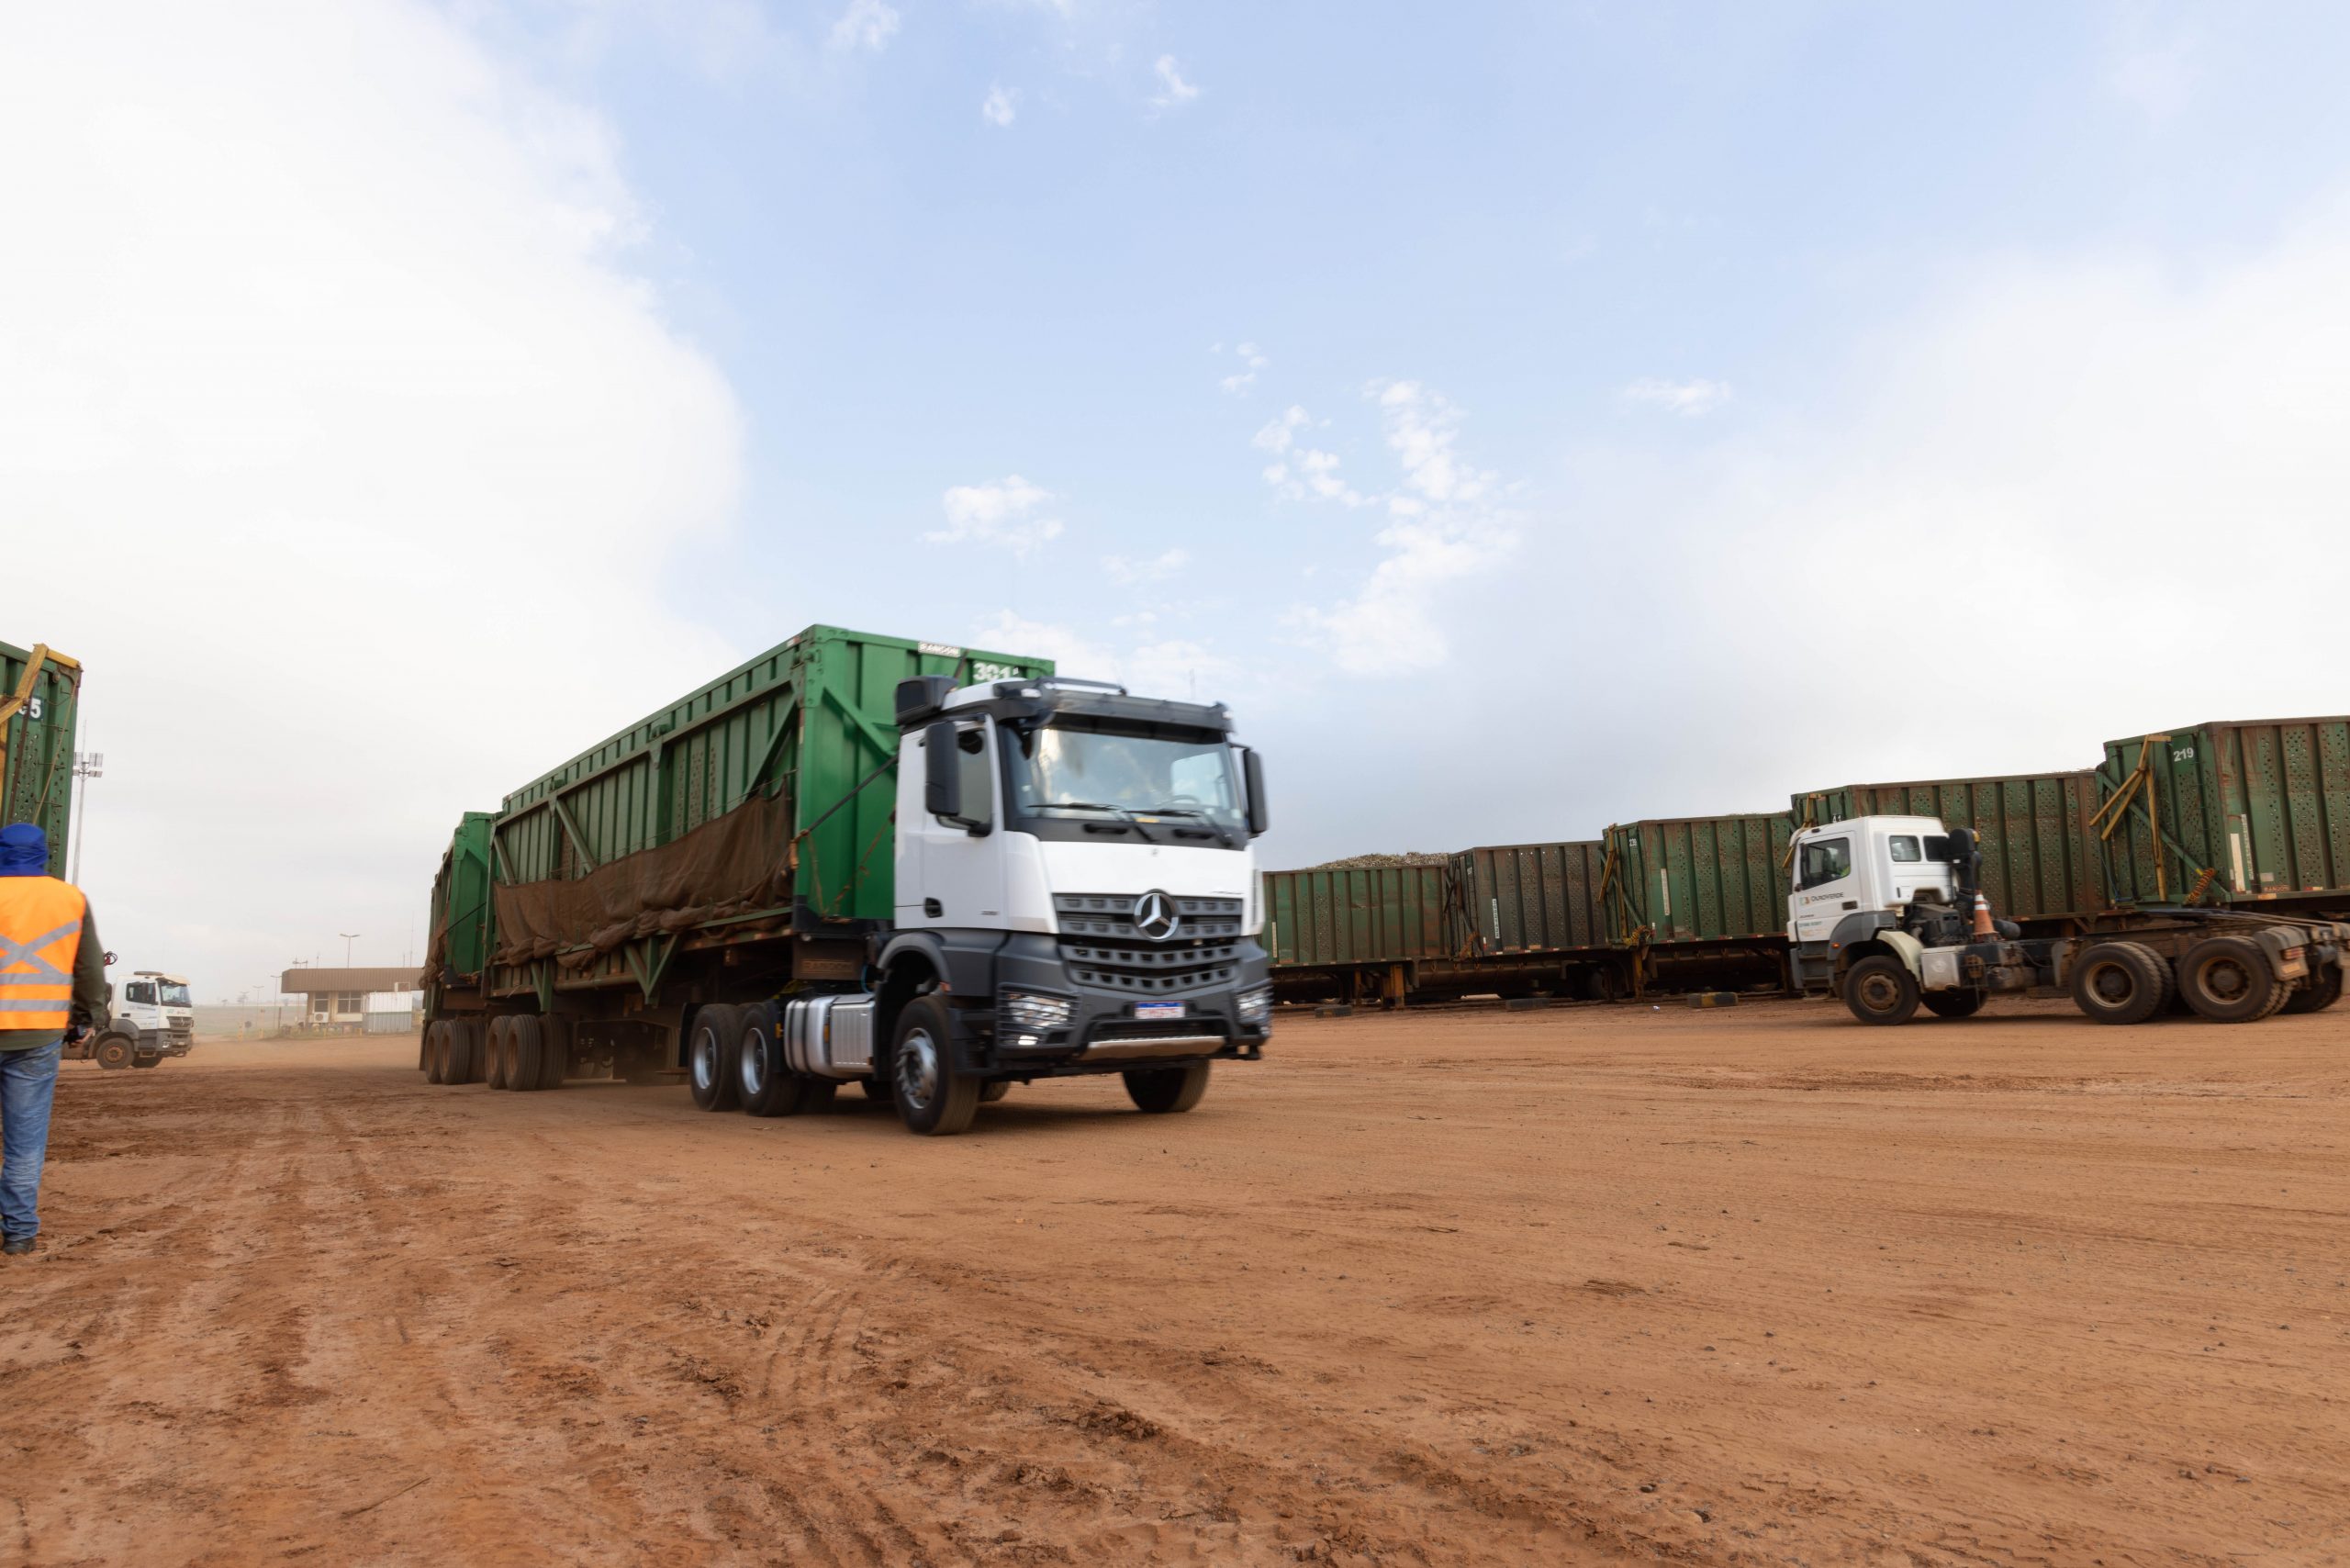 Conheça o Scania R900 Kivara, o caminhão africano com mais de 900 cv